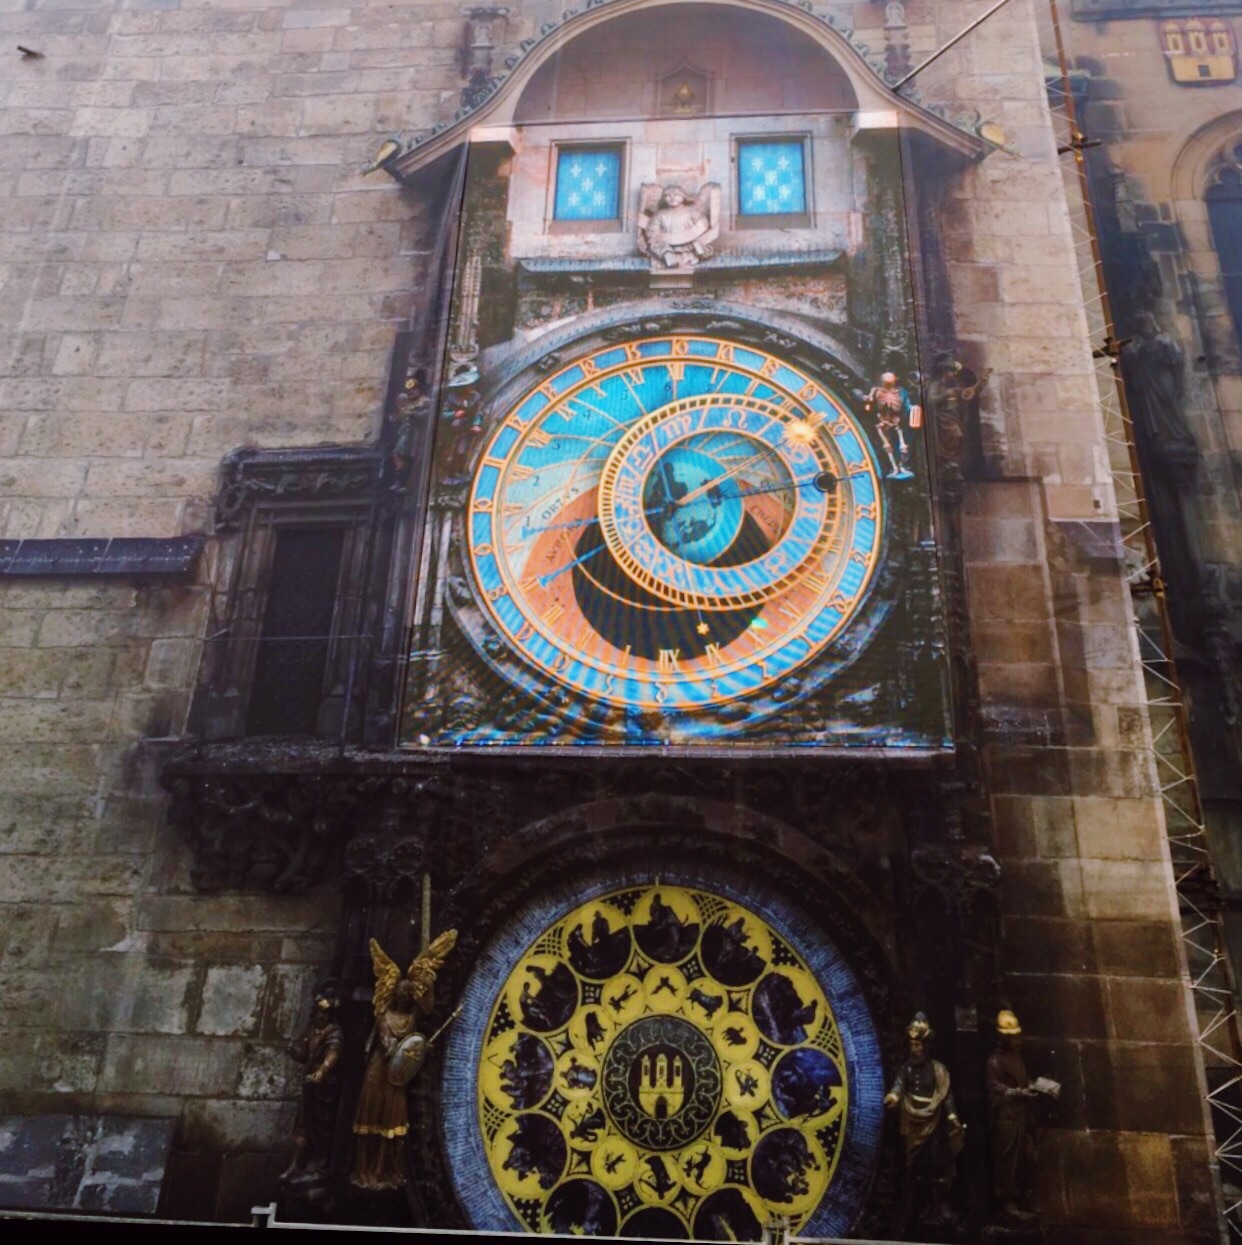 据说布拉格老城的钟世界最美，国王为此刺瞎了设计师的眼睛。